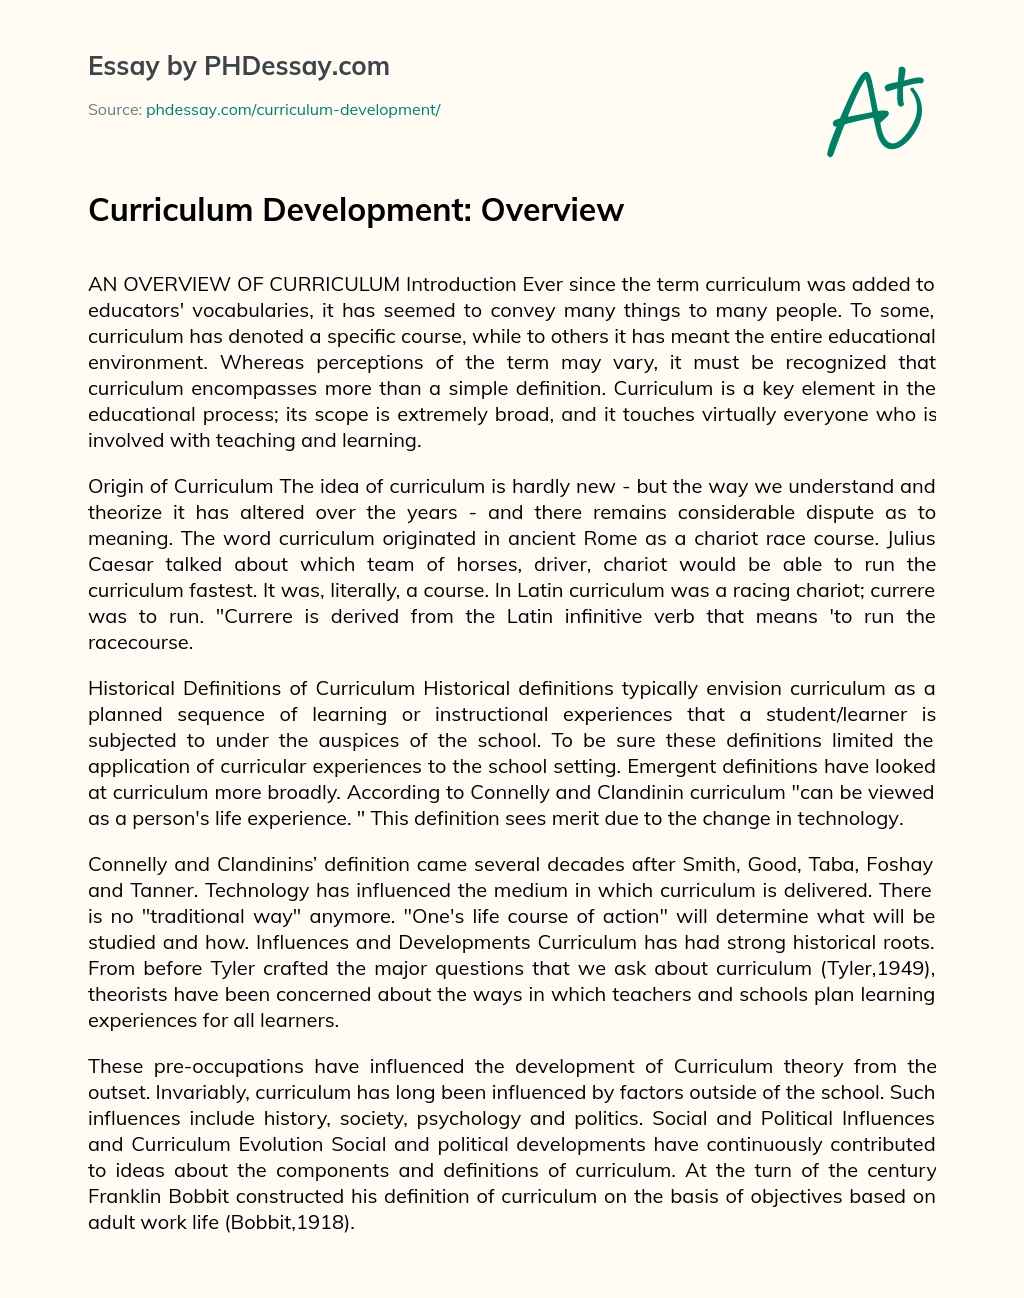 Curriculum Development: Overview essay